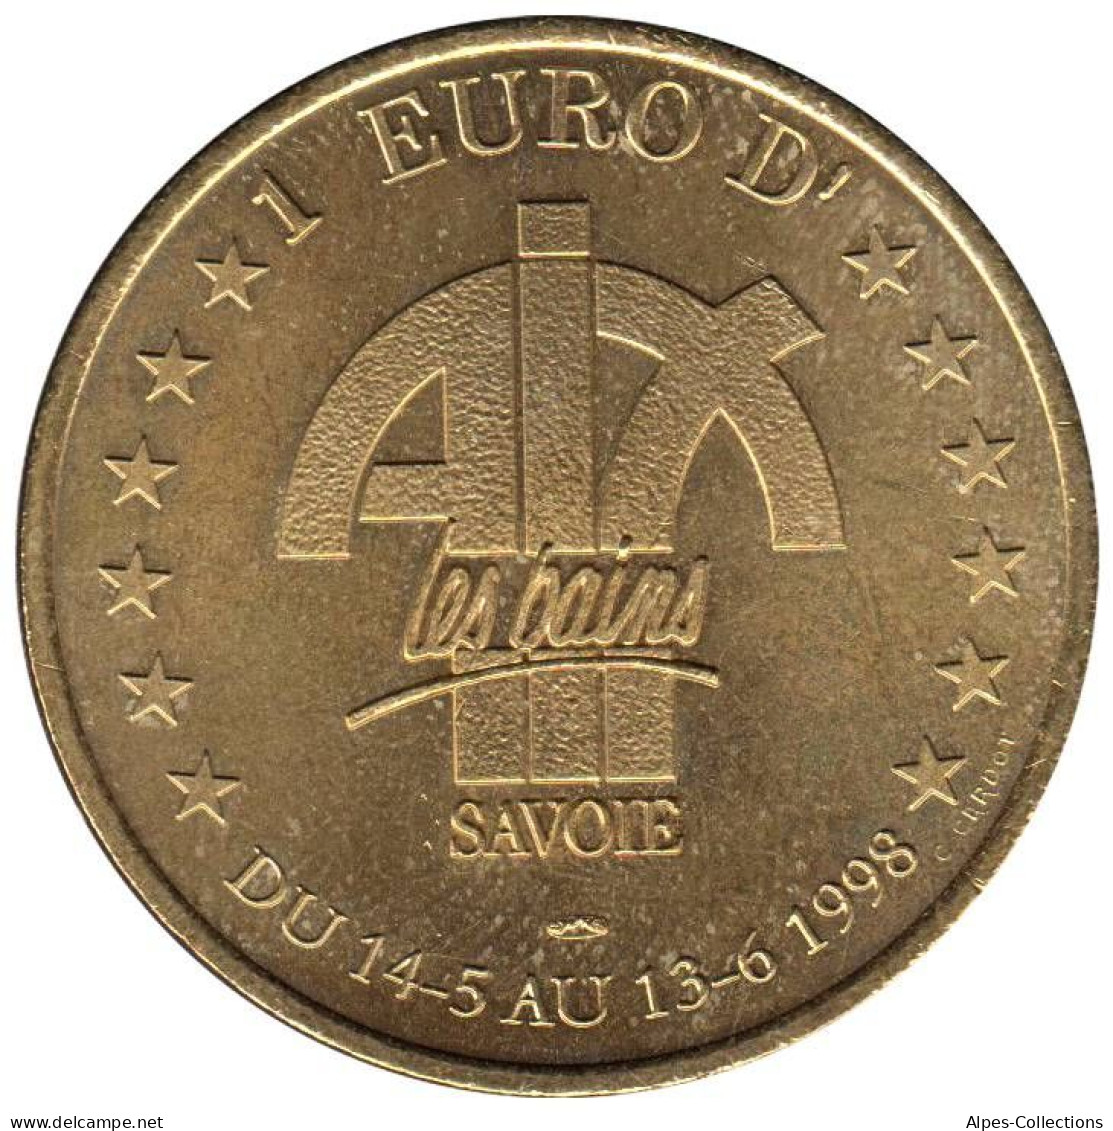 AIX LES BAINS - EU0010.2 - 1 EURO DES VILLES - Réf: T418 - 1998 - Euro Der Städte